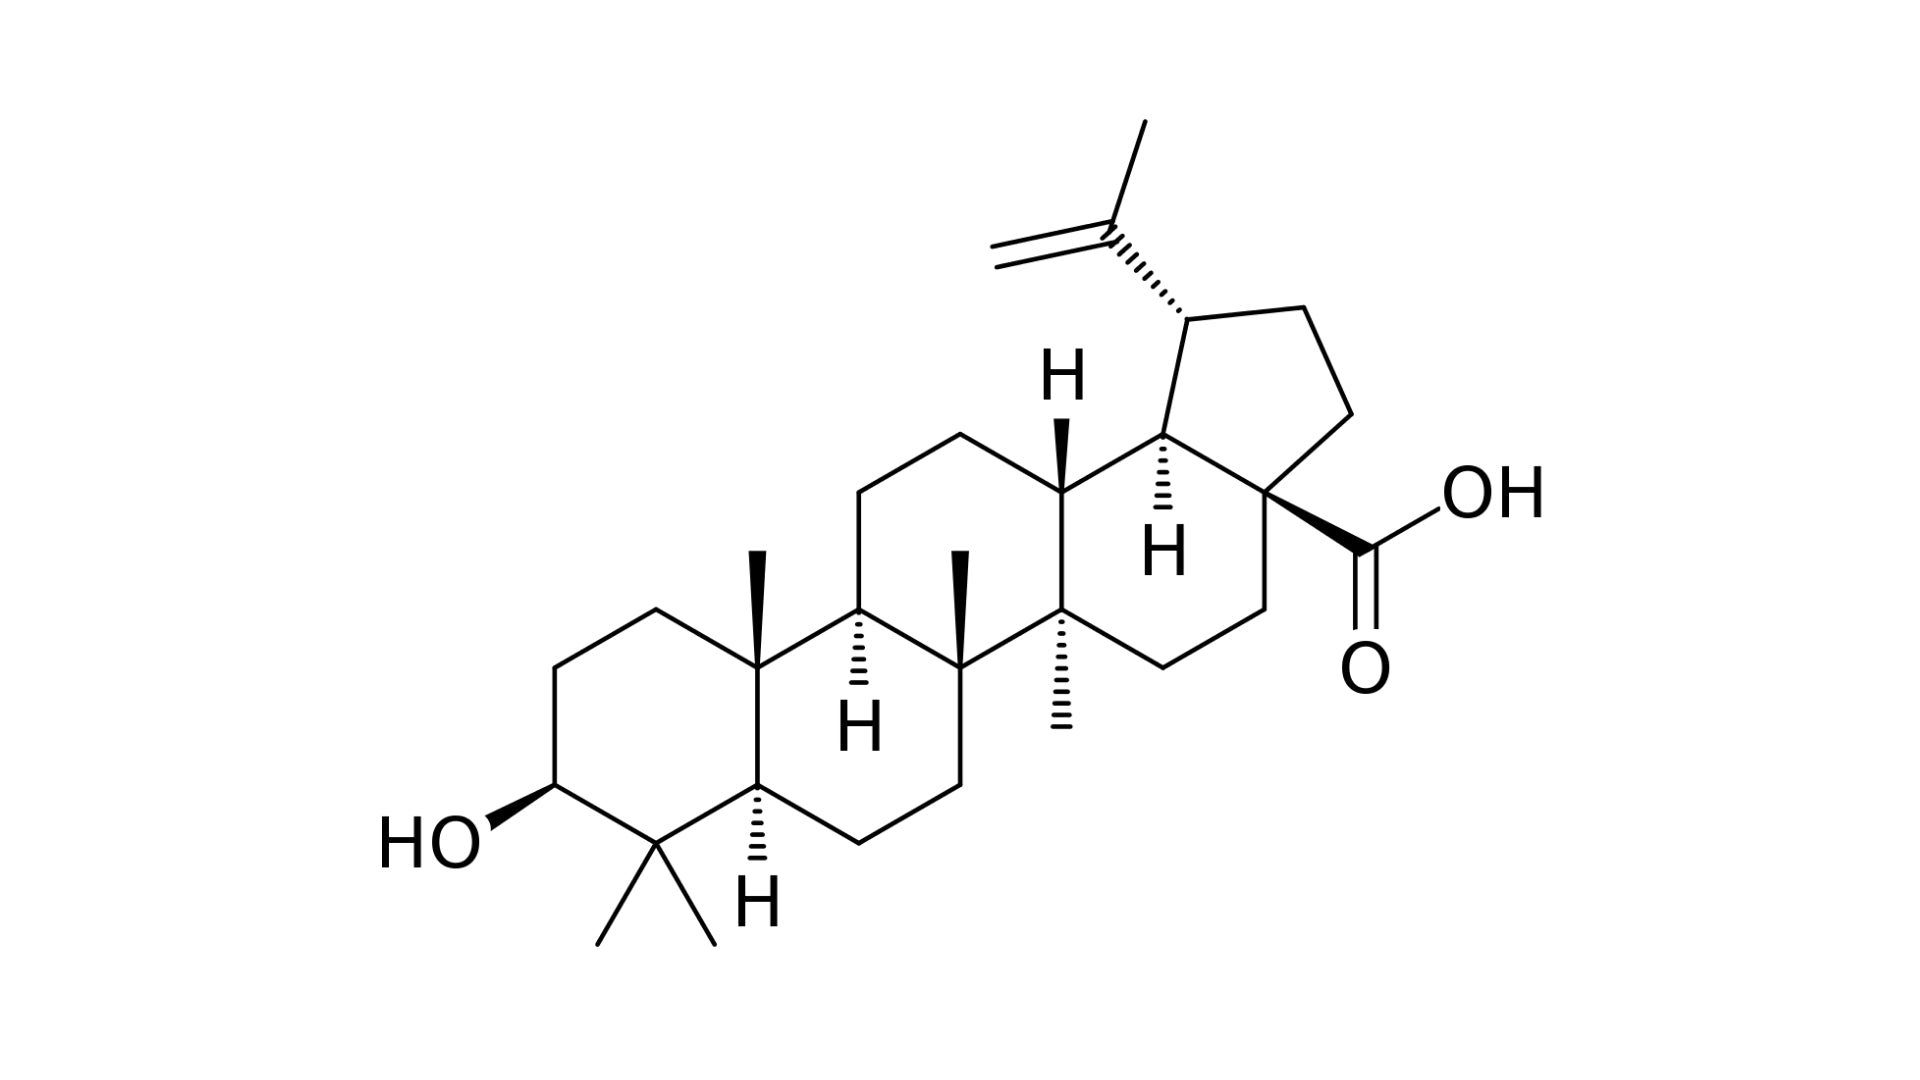 betulinic acid from inonotus obliquus